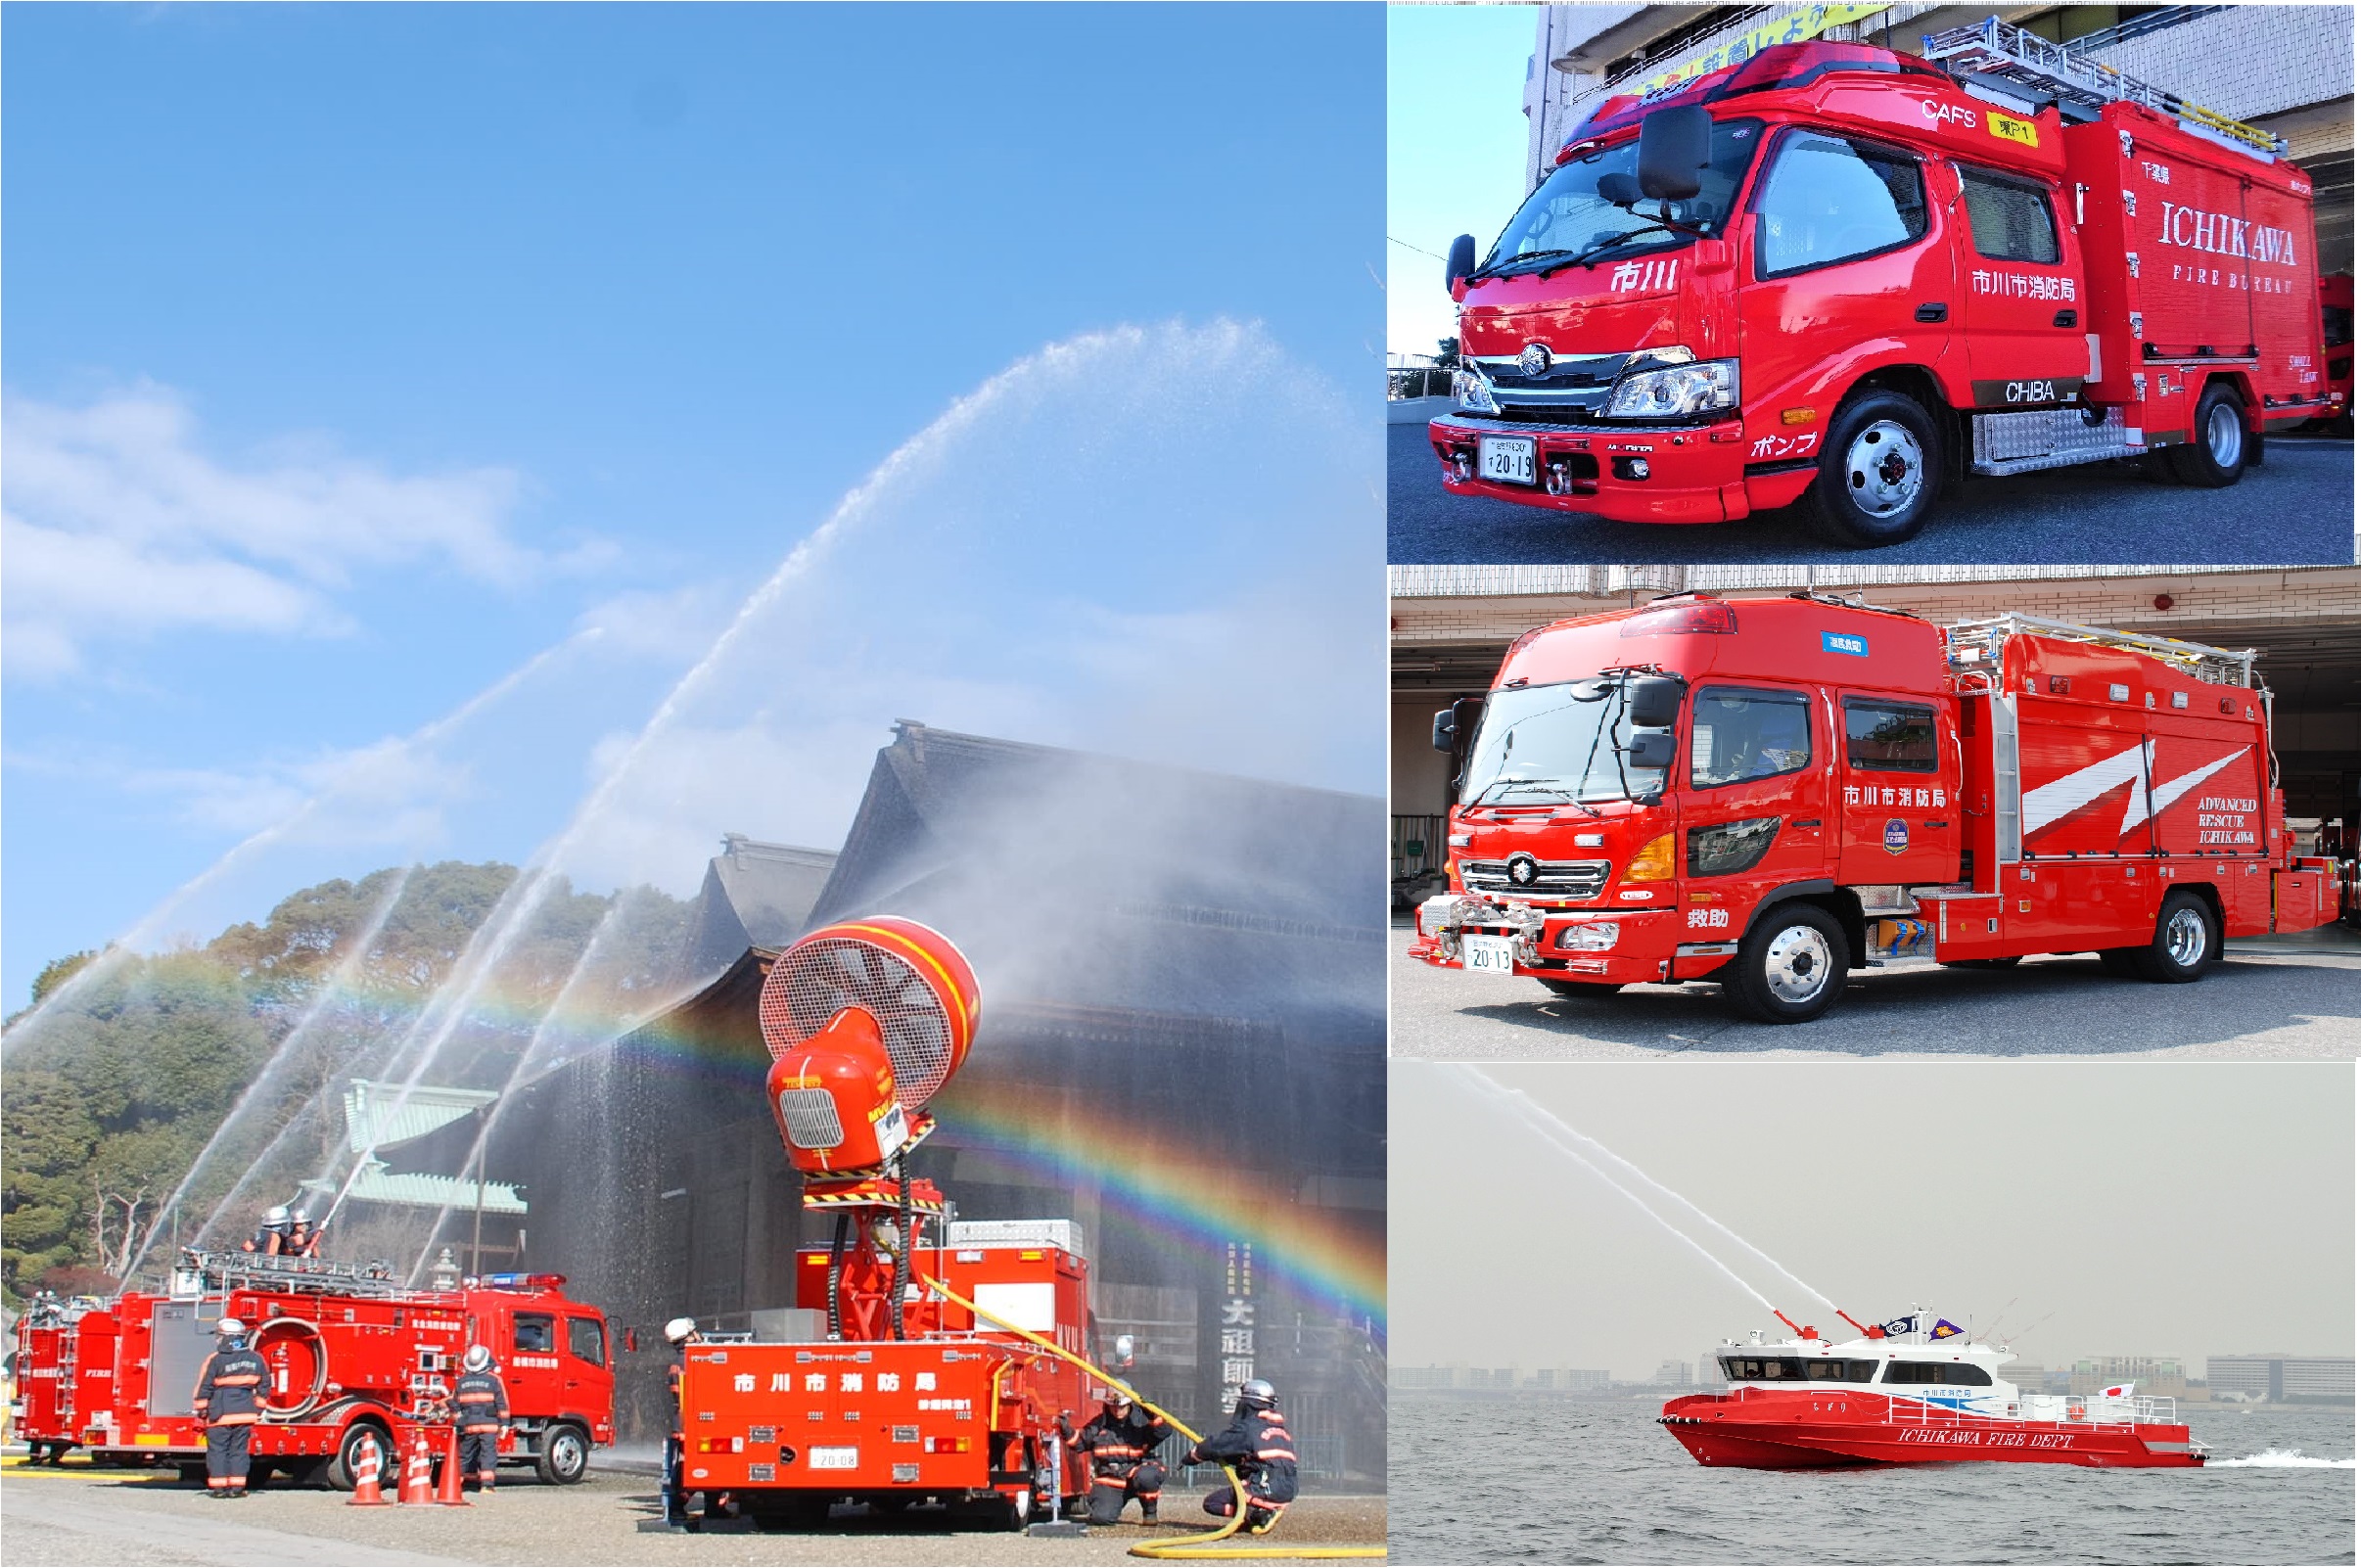 放水している消防車、消防車、消防艇の写真